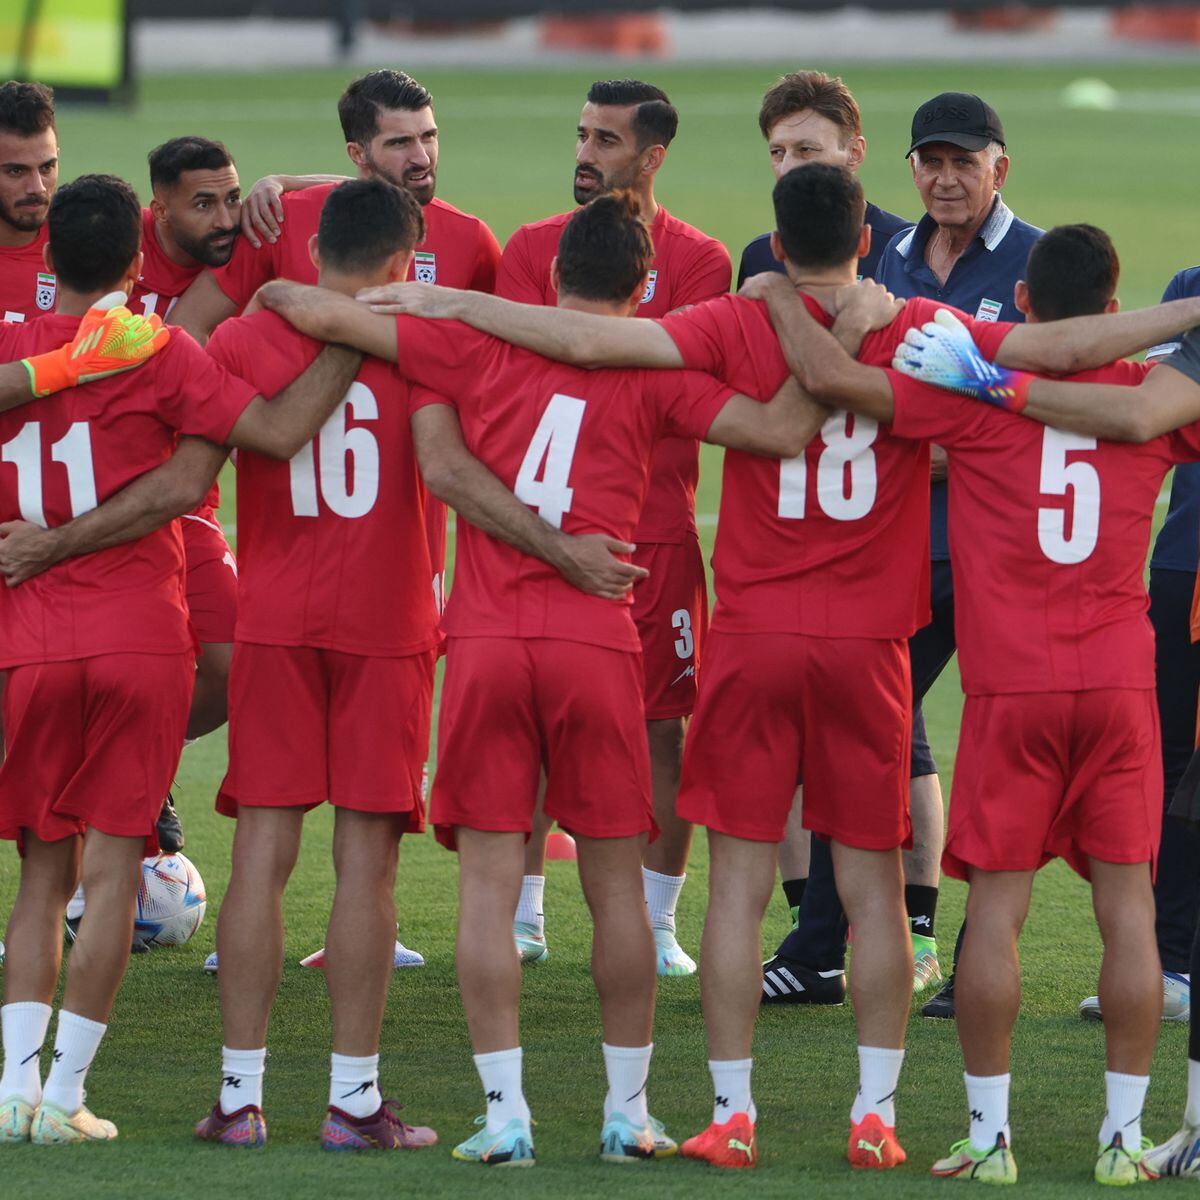 Lesionado, iraniano Sardar Azmoun é dúvida para Copa do Mundo